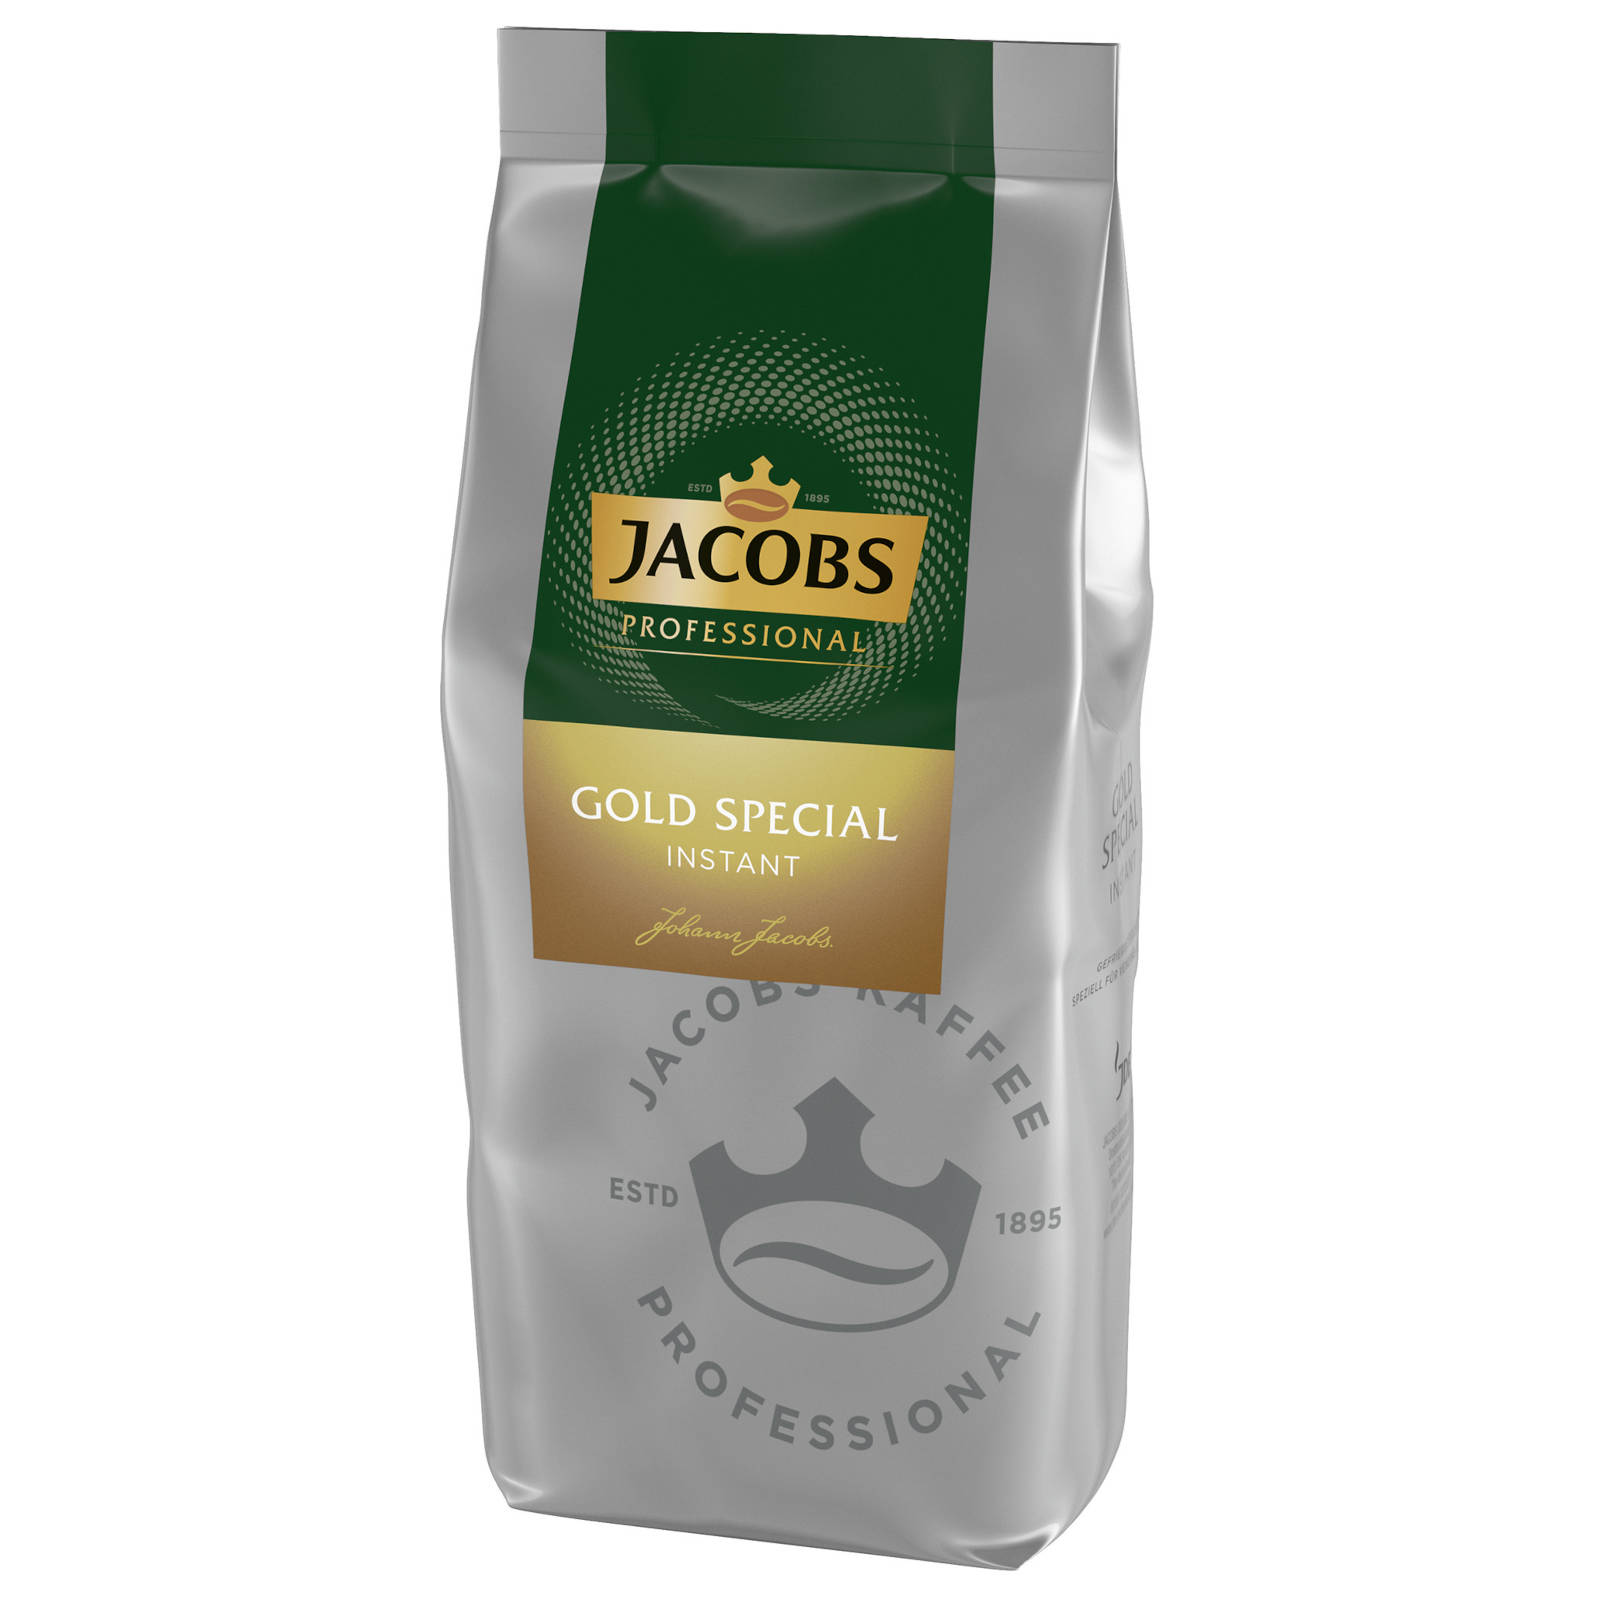 Heißgetränkeautomaten) JACOBS heißem (In g Special Wasser Gold Instantkaffee auflösen, Professiona 2x500